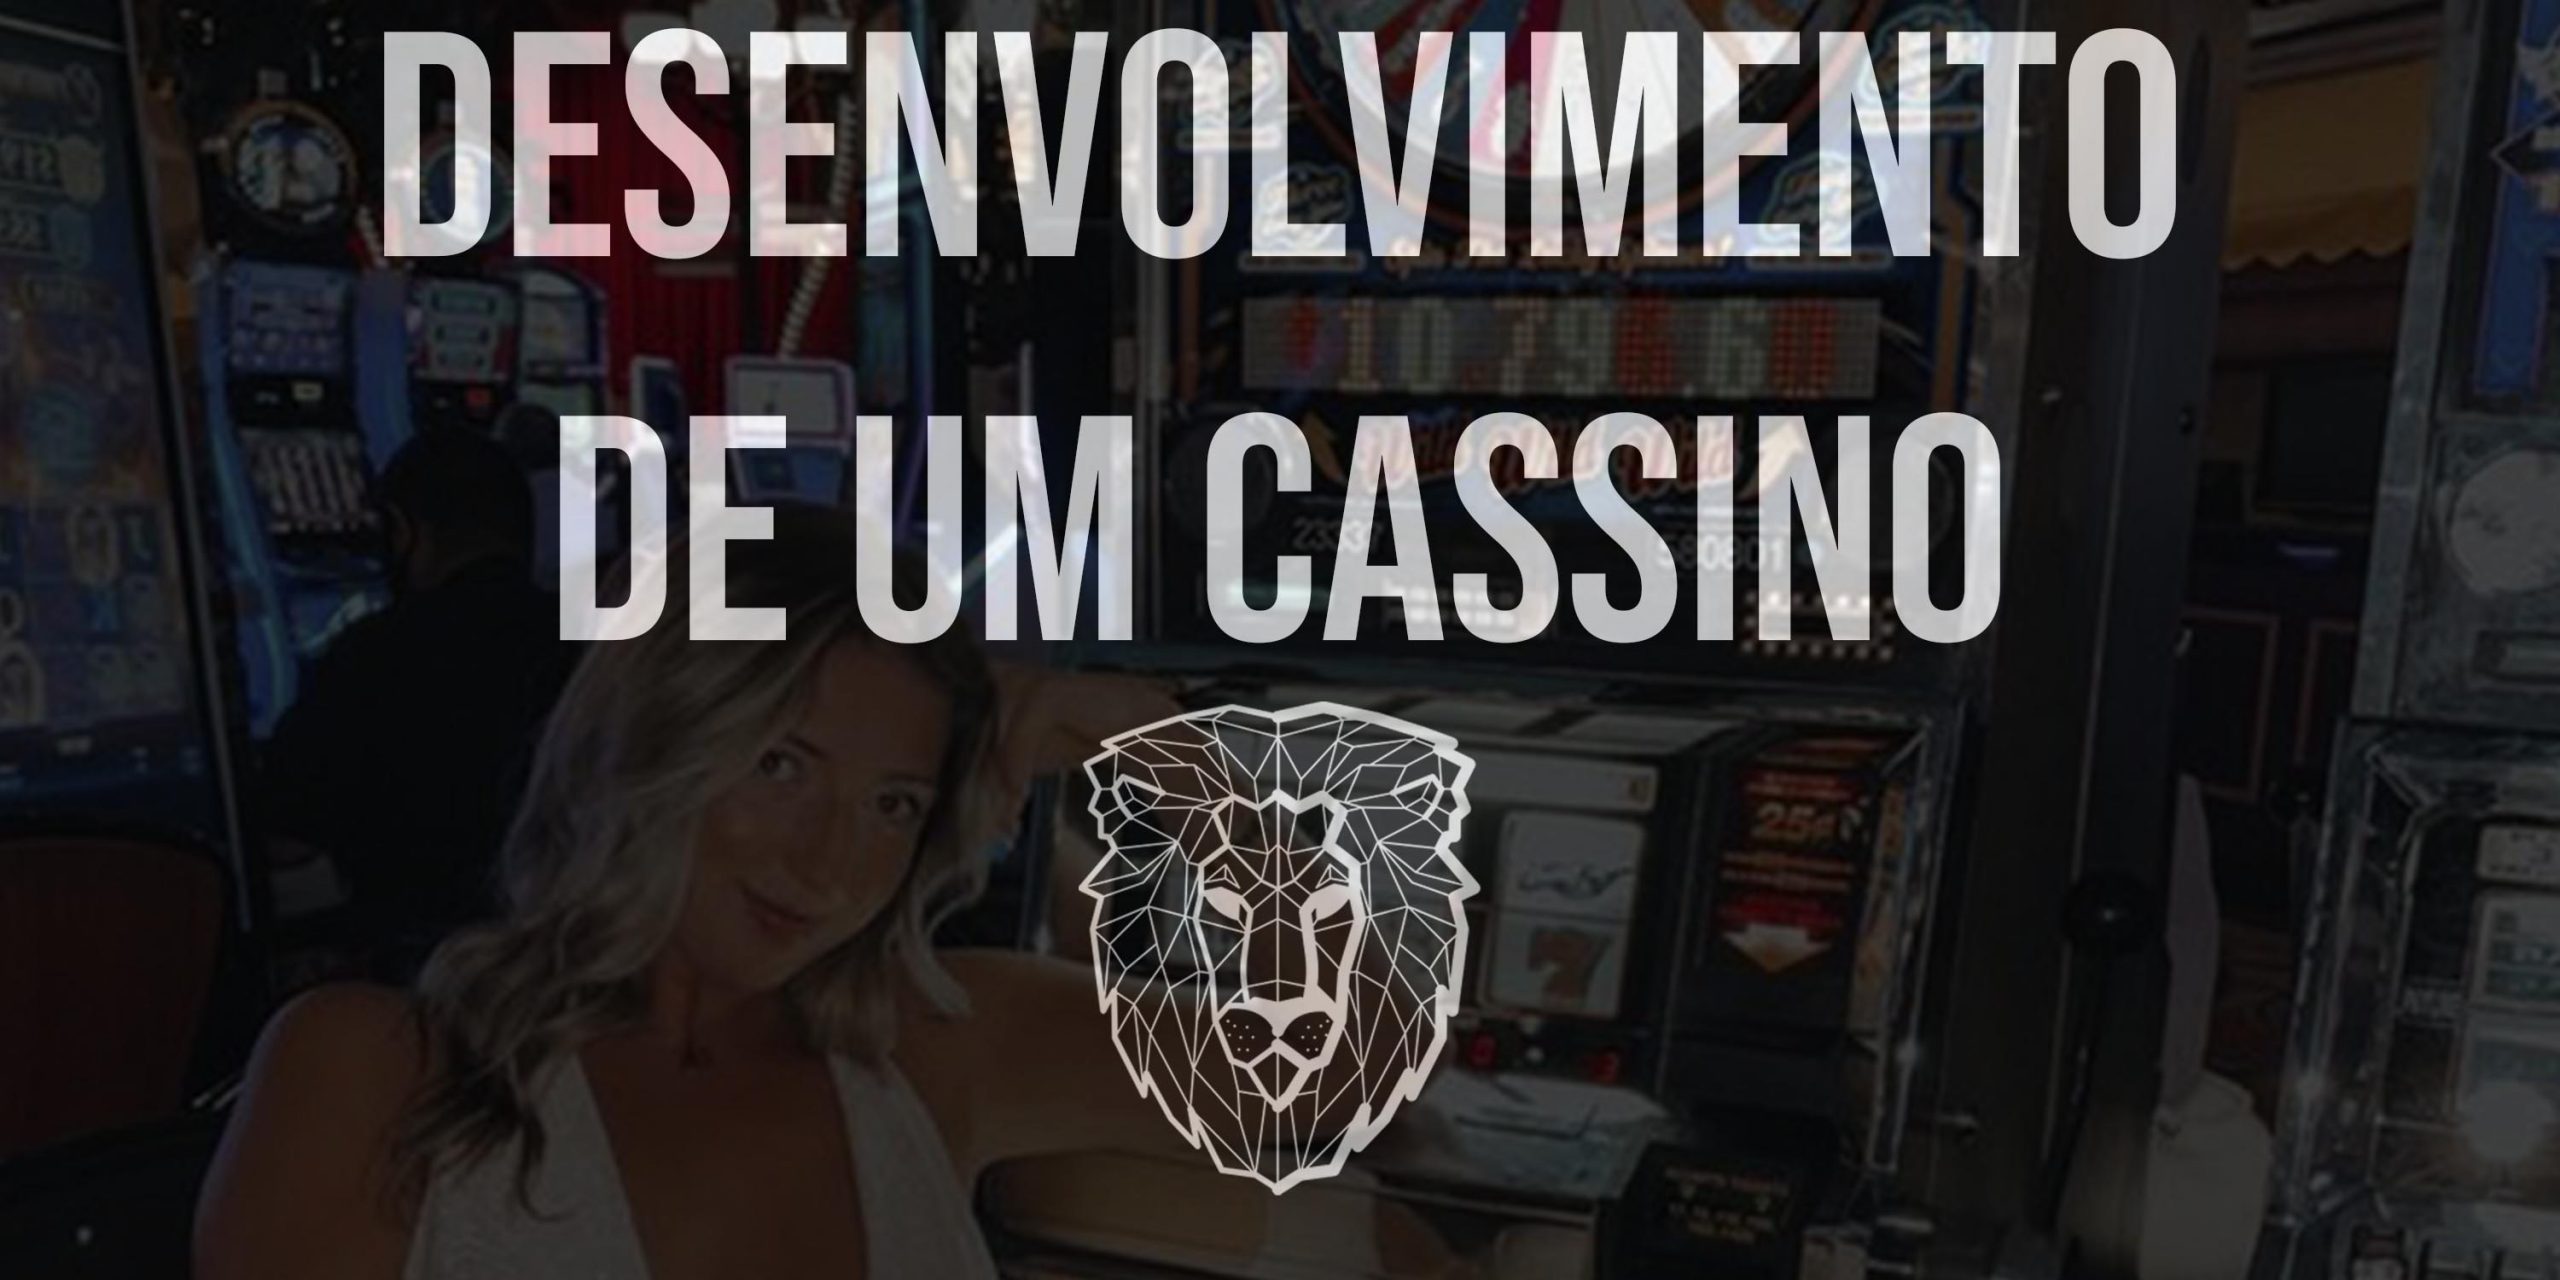 desenvolvimento de um cassino, software do site web de um casino, configuração do casino